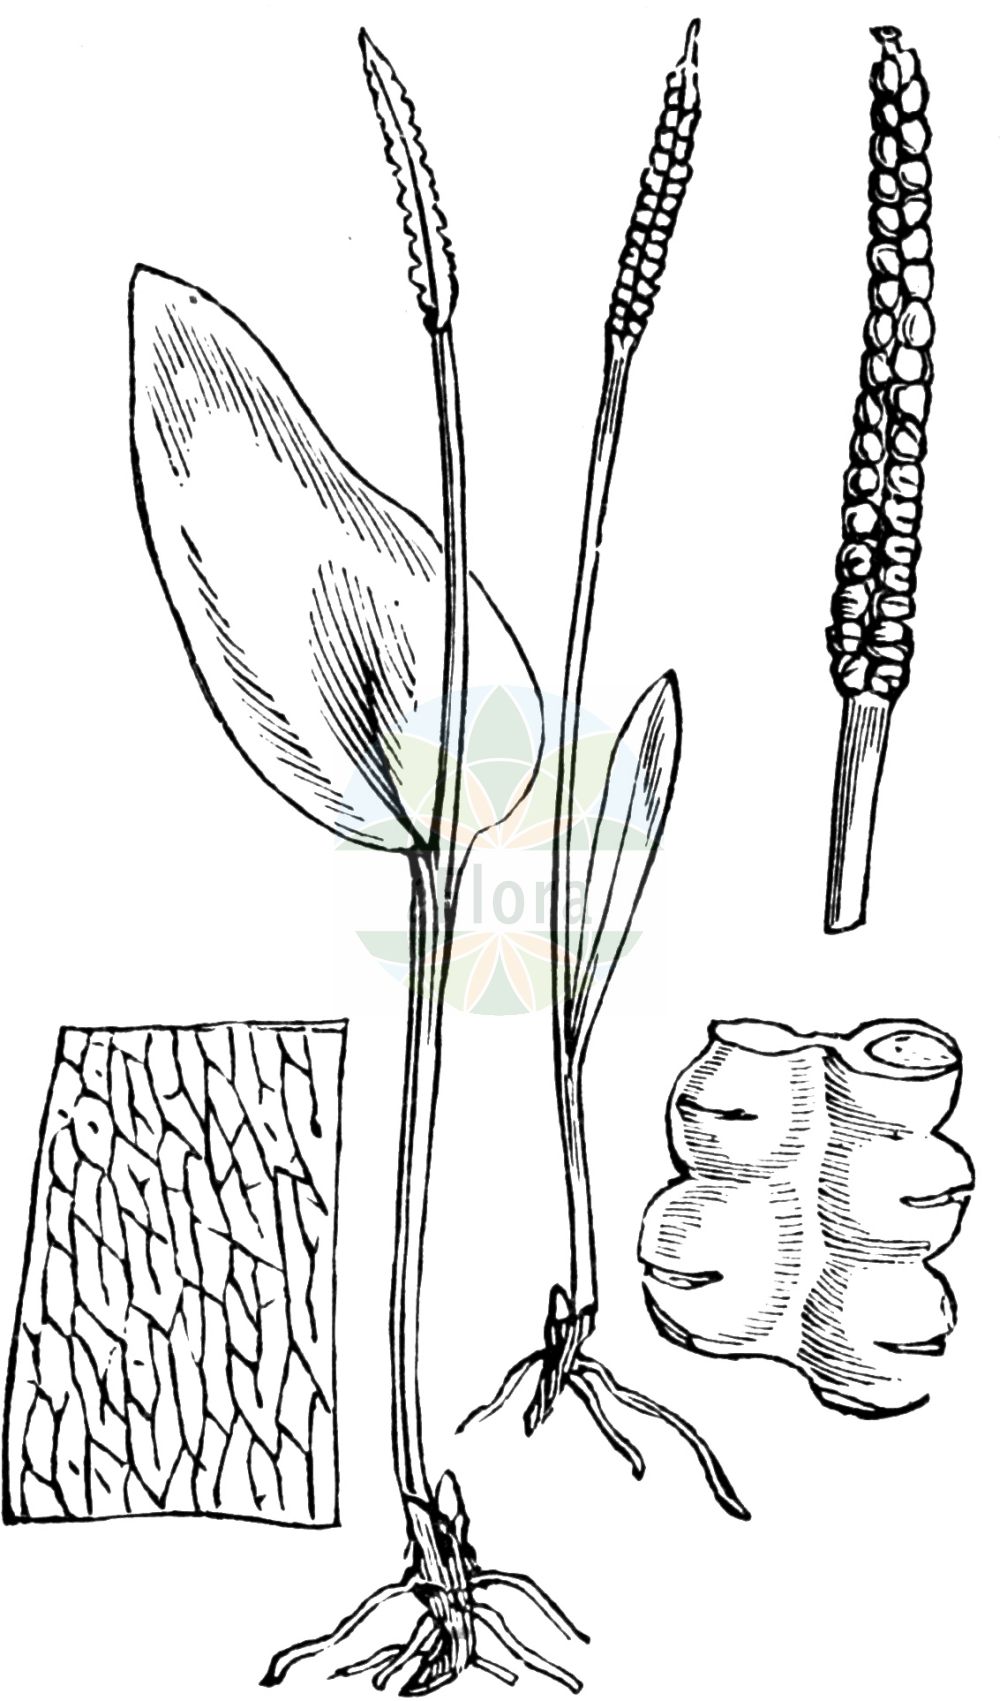 Historische Abbildung von Ophioglossum vulgatum (Gewöhnliche Natternzunge - Adder's-tongue). Das Bild zeigt Blatt, Bluete, Frucht und Same. ---- Historical Drawing of Ophioglossum vulgatum (Gewöhnliche Natternzunge - Adder's-tongue). The image is showing leaf, flower, fruit and seed.(Ophioglossum vulgatum,Gewöhnliche Natternzunge,Adder's-tongue,Ophioglossum alpinum,Ophioglossum vulgatum,Ophioglossum vulgatum var. minus,Gewoehnliche Natternzunge,Adder's-tongue,Southern Adderstongue,Common Adder's Tongue,Ophioglossum,Natternzunge,Adderstongue,Ophioglossaceae,Natternzungengewächse,Adder's-tongue family,Blatt,Bluete,Frucht,Same,leaf,flower,fruit,seed,Fitch et al. (1880))